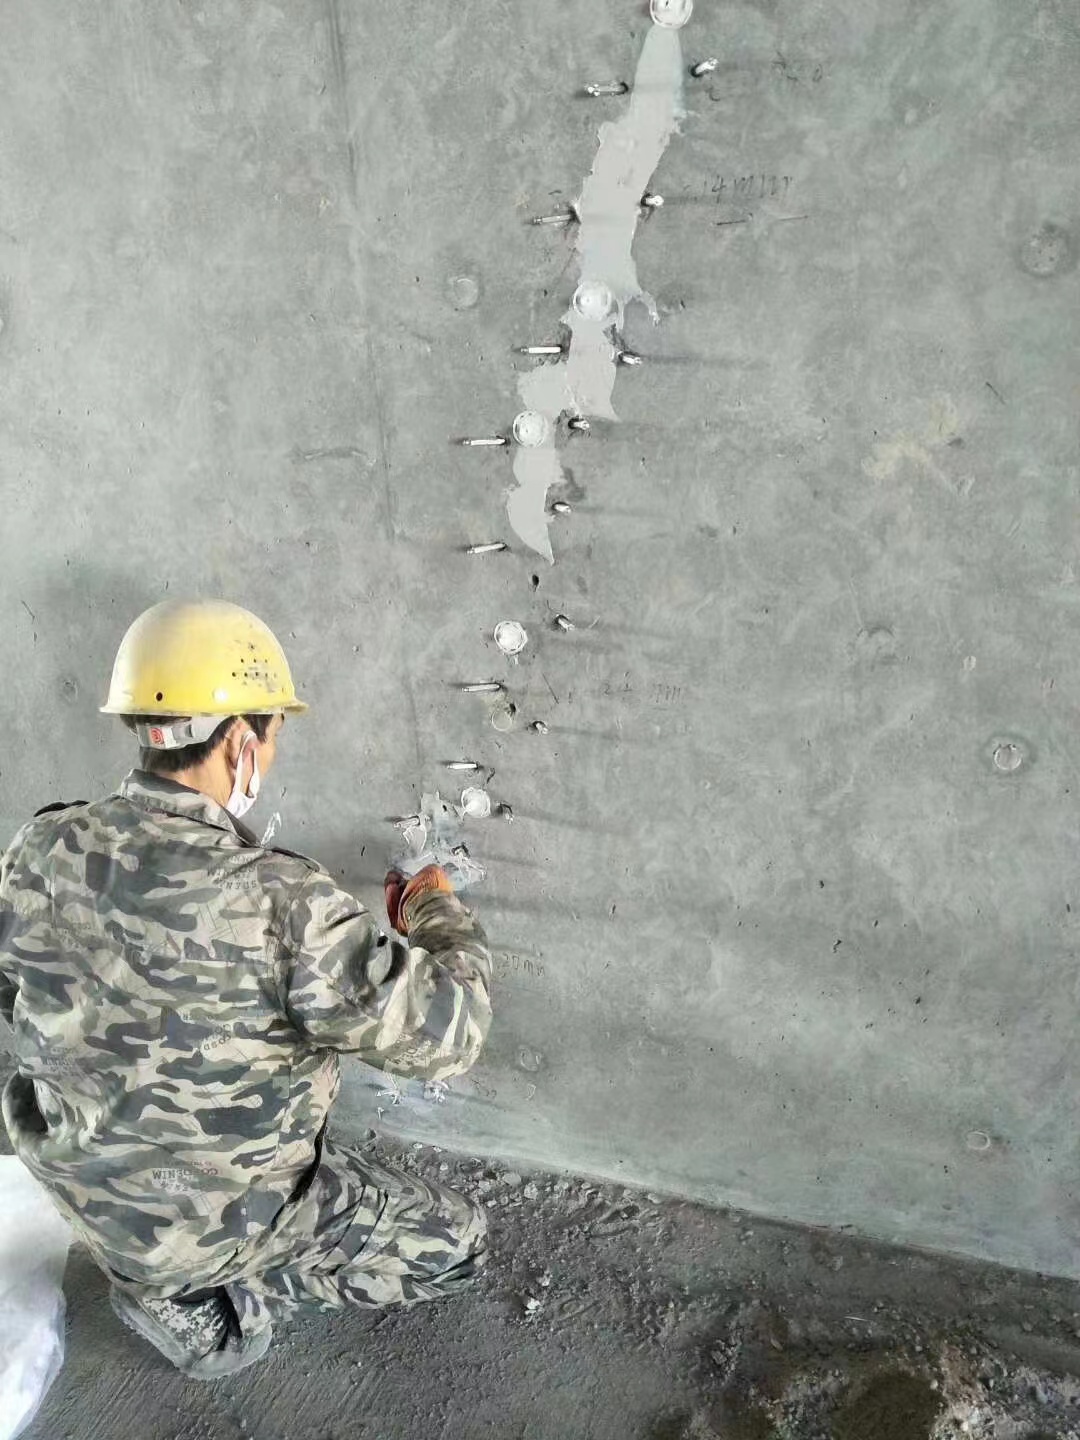 彭泽混凝土楼板裂缝加固施工的方案